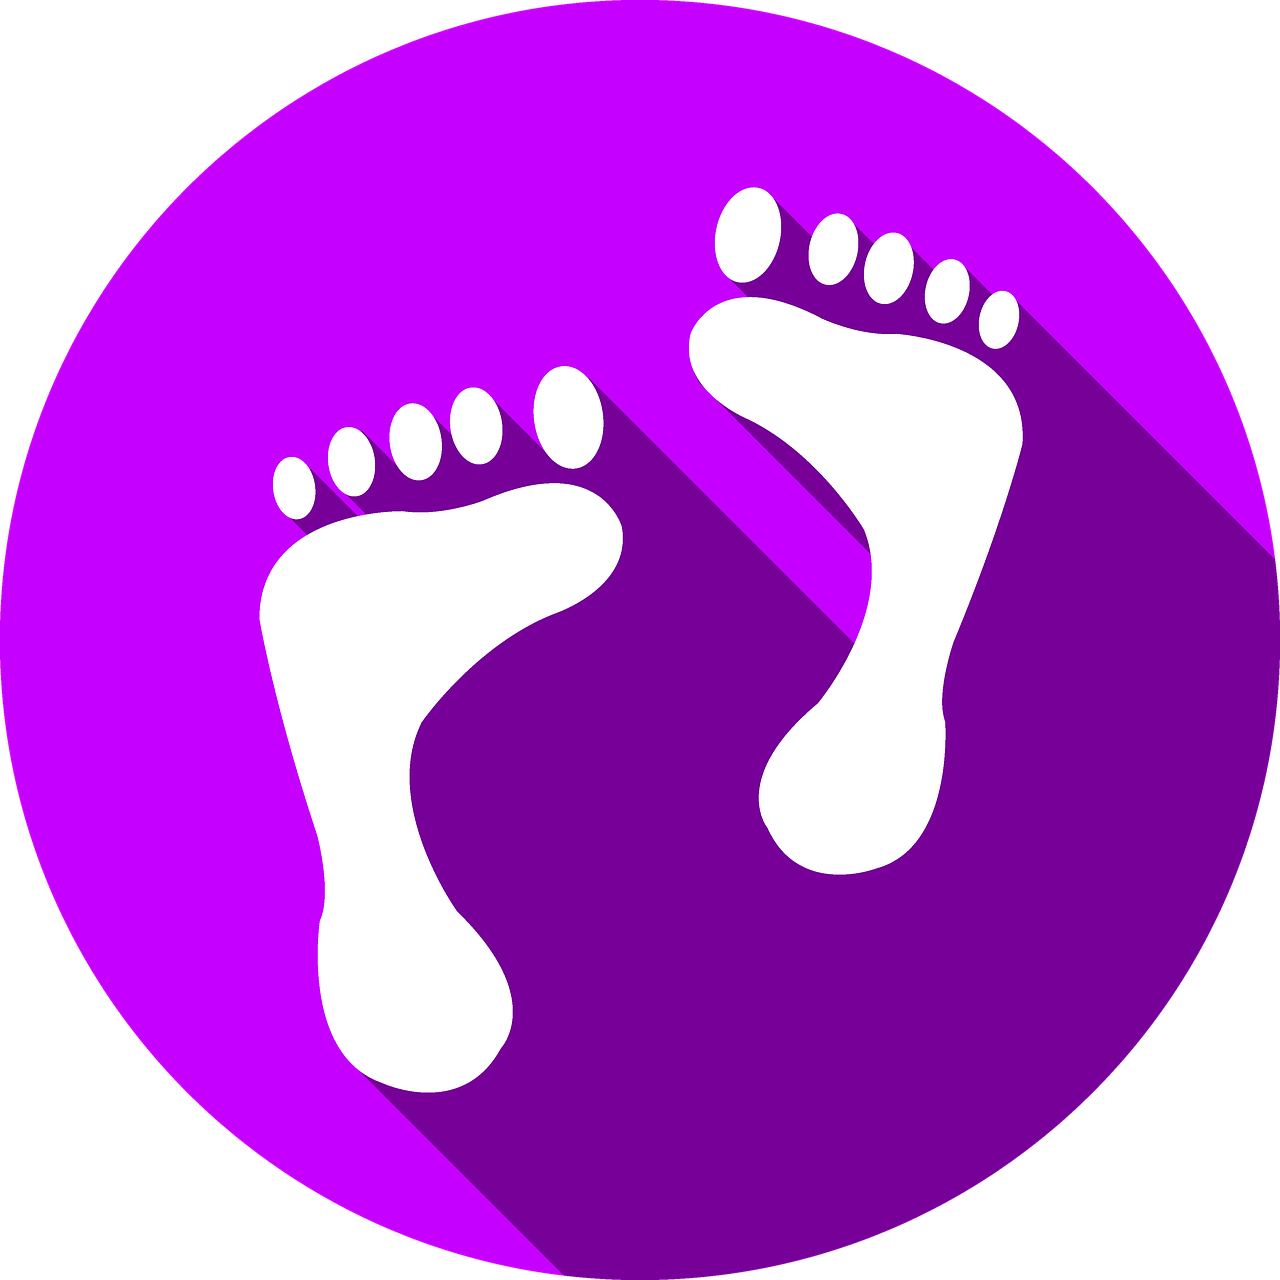 feet icon button free photo